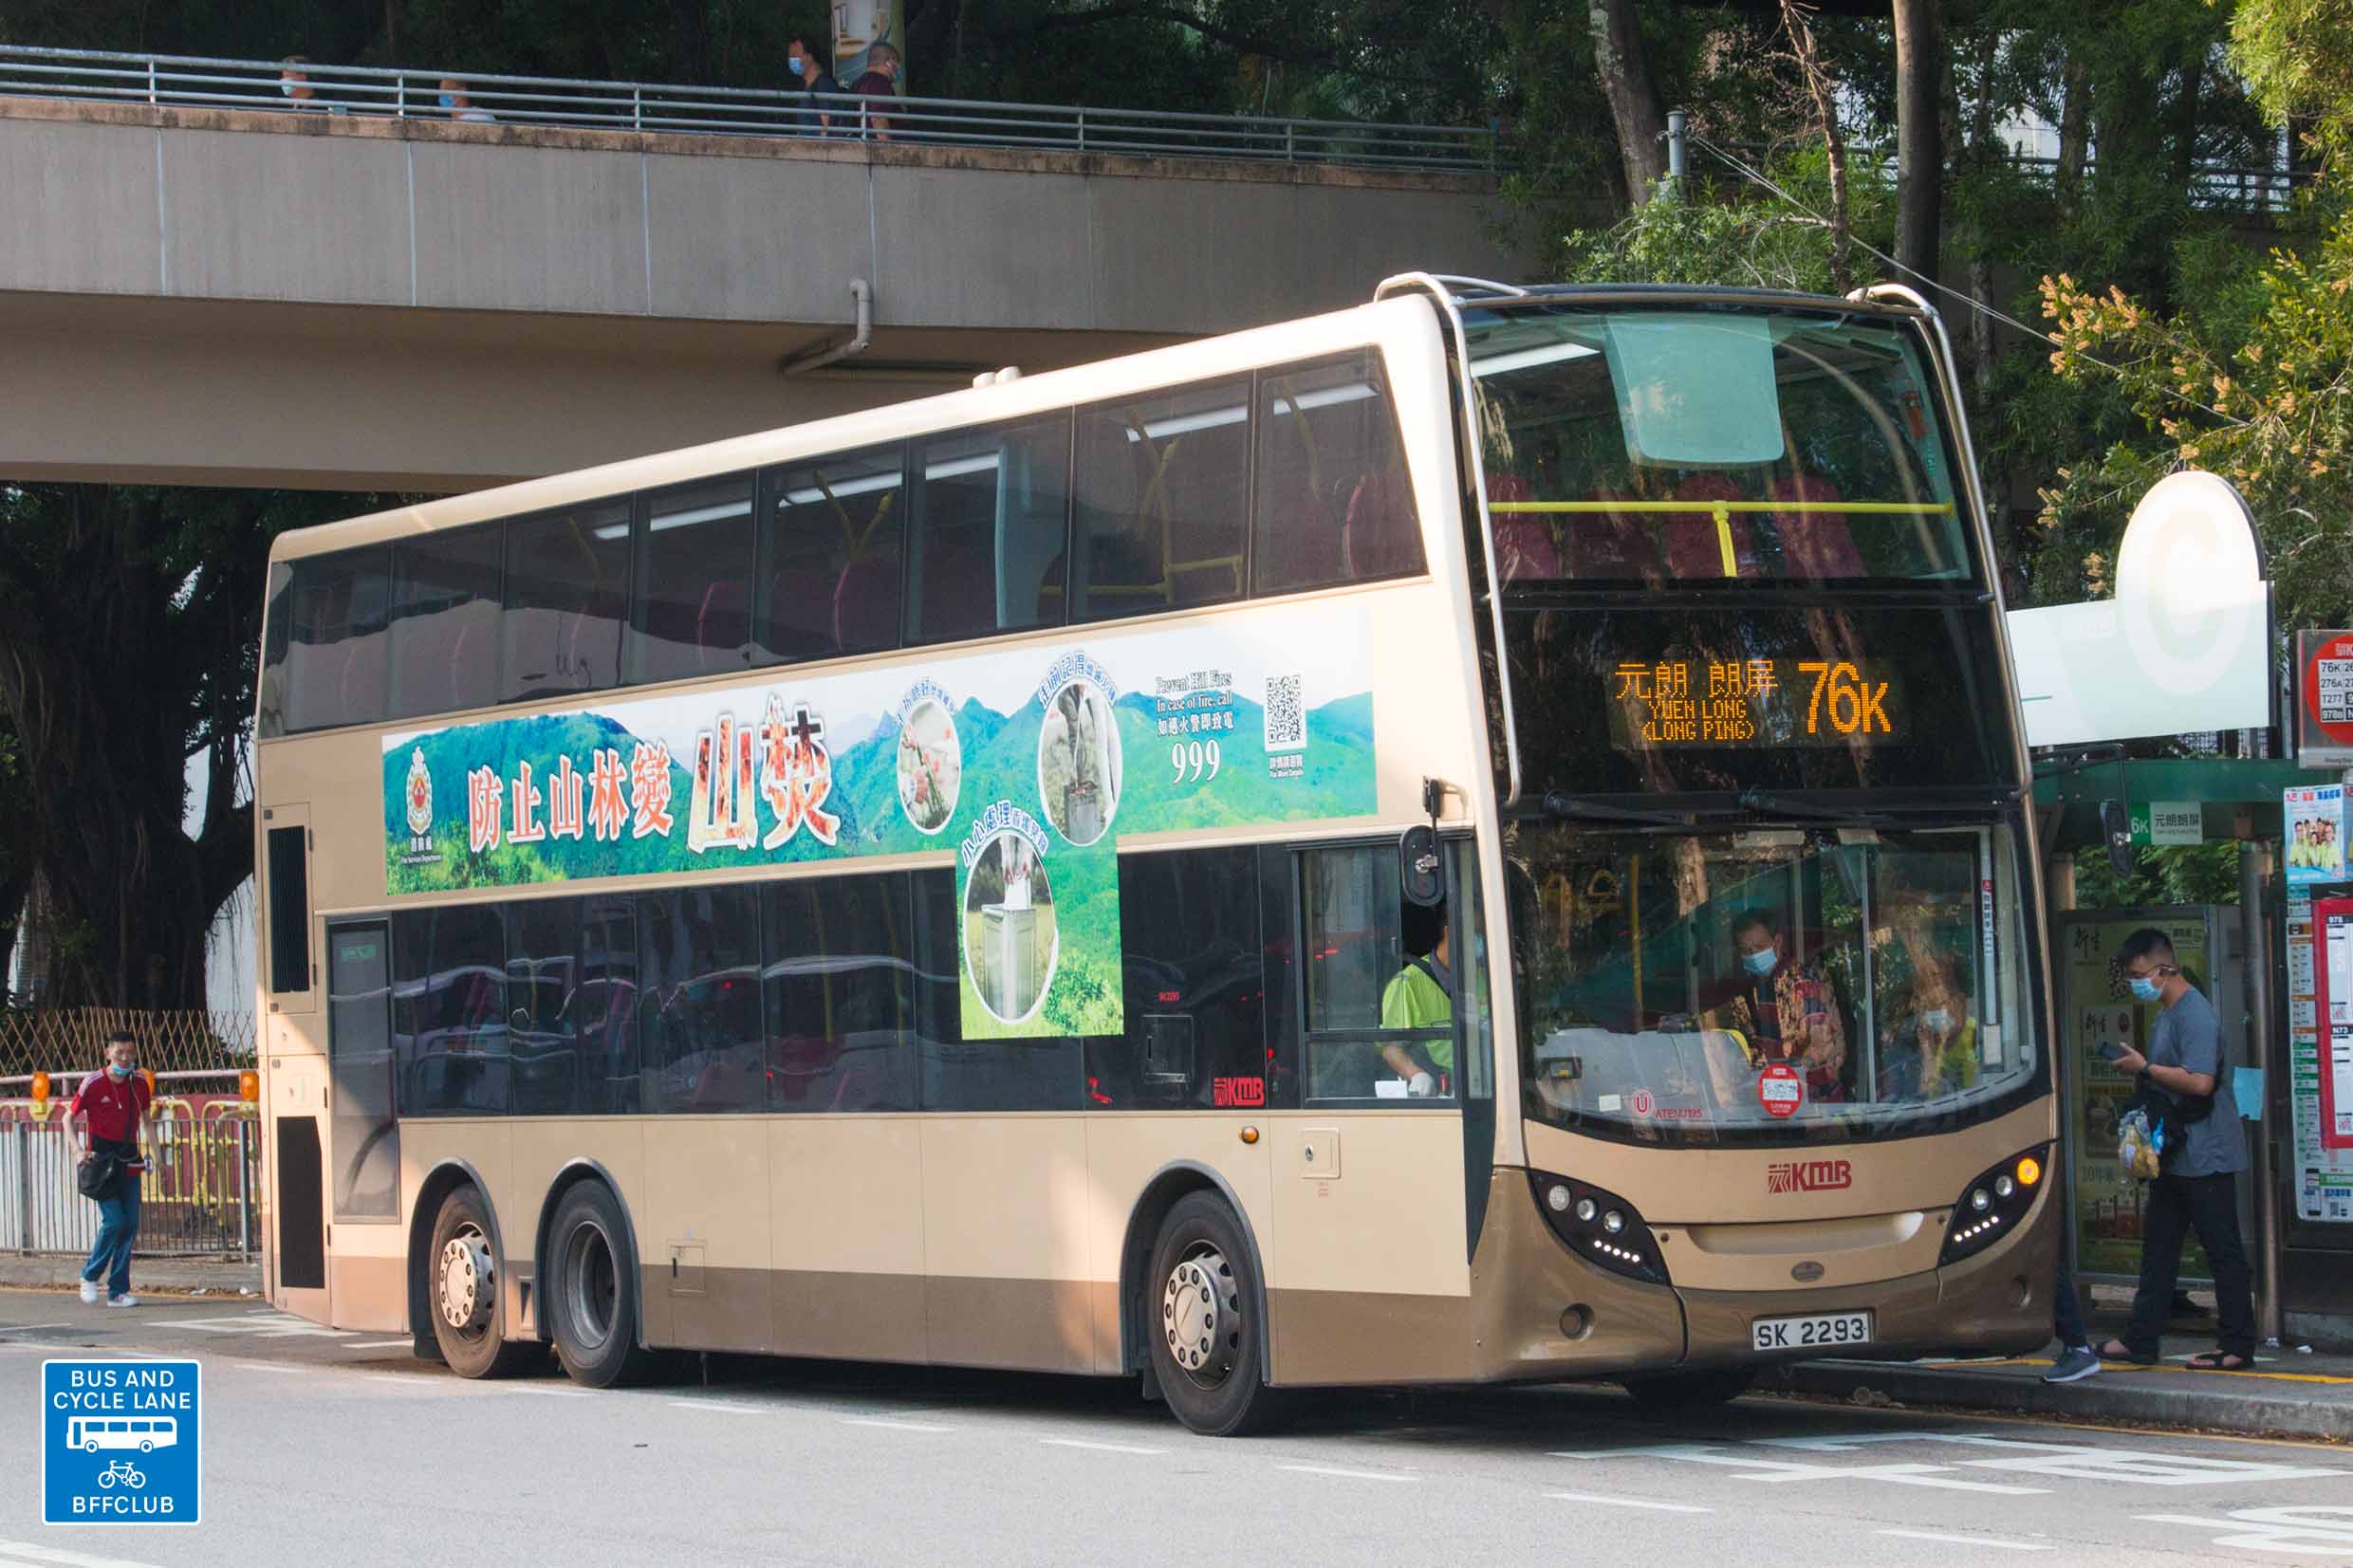 九巴76k線 香港巴士大典 Fandom